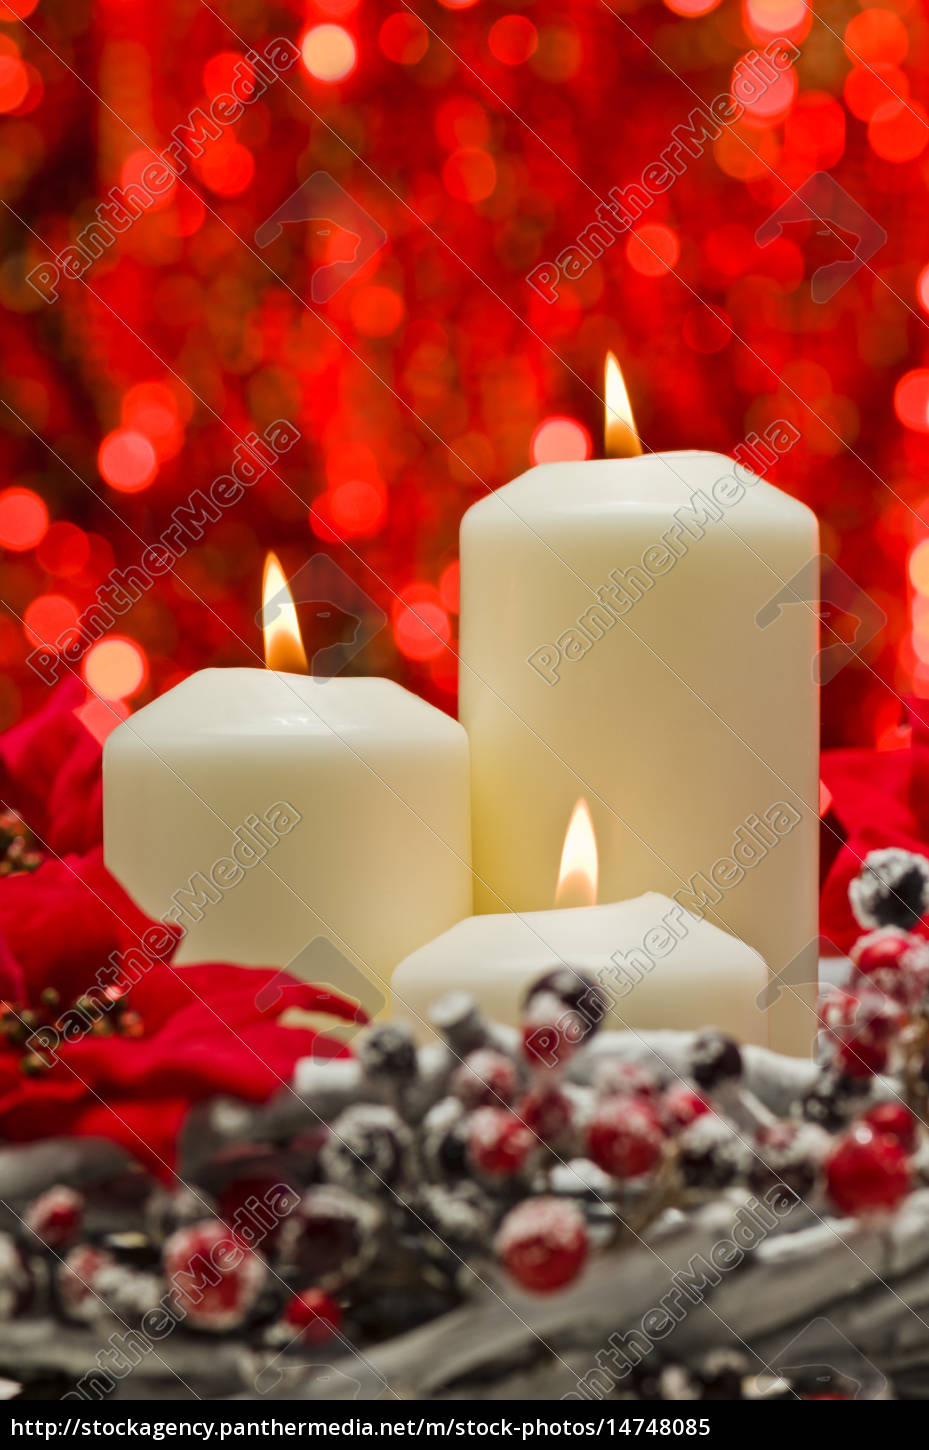 candele bianche in autunno inverno decorazione - Foto stock #14748085